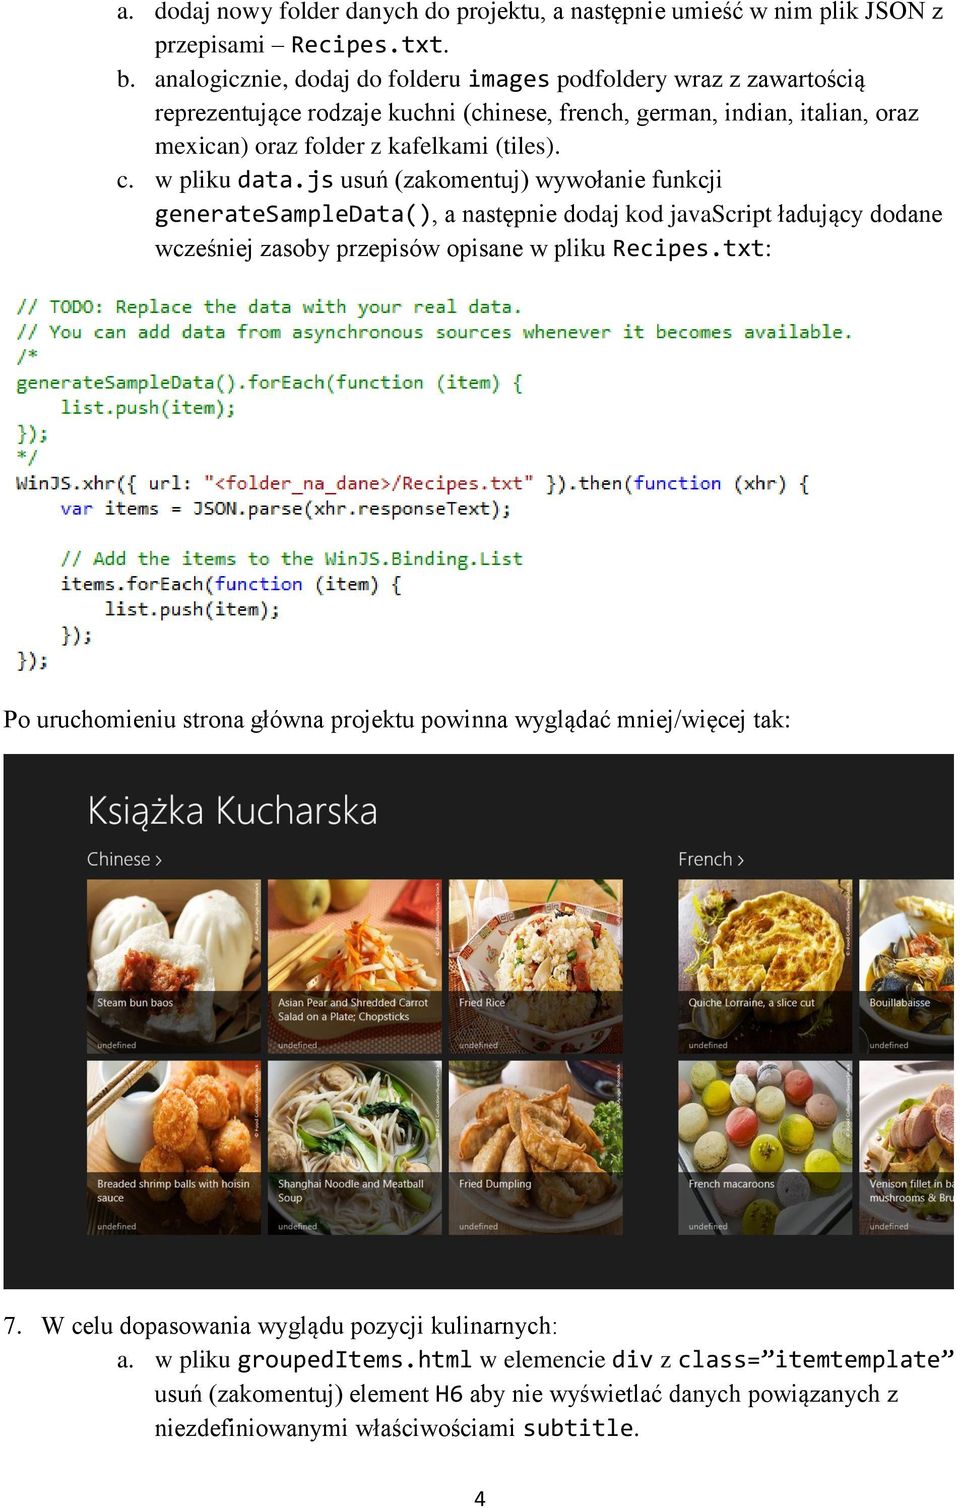 w pliku data.js usuń (zakomentuj) wywołanie funkcji generatesampledata(), a następnie dodaj kod javascript ładujący dodane wcześniej zasoby przepisów opisane w pliku Recipes.